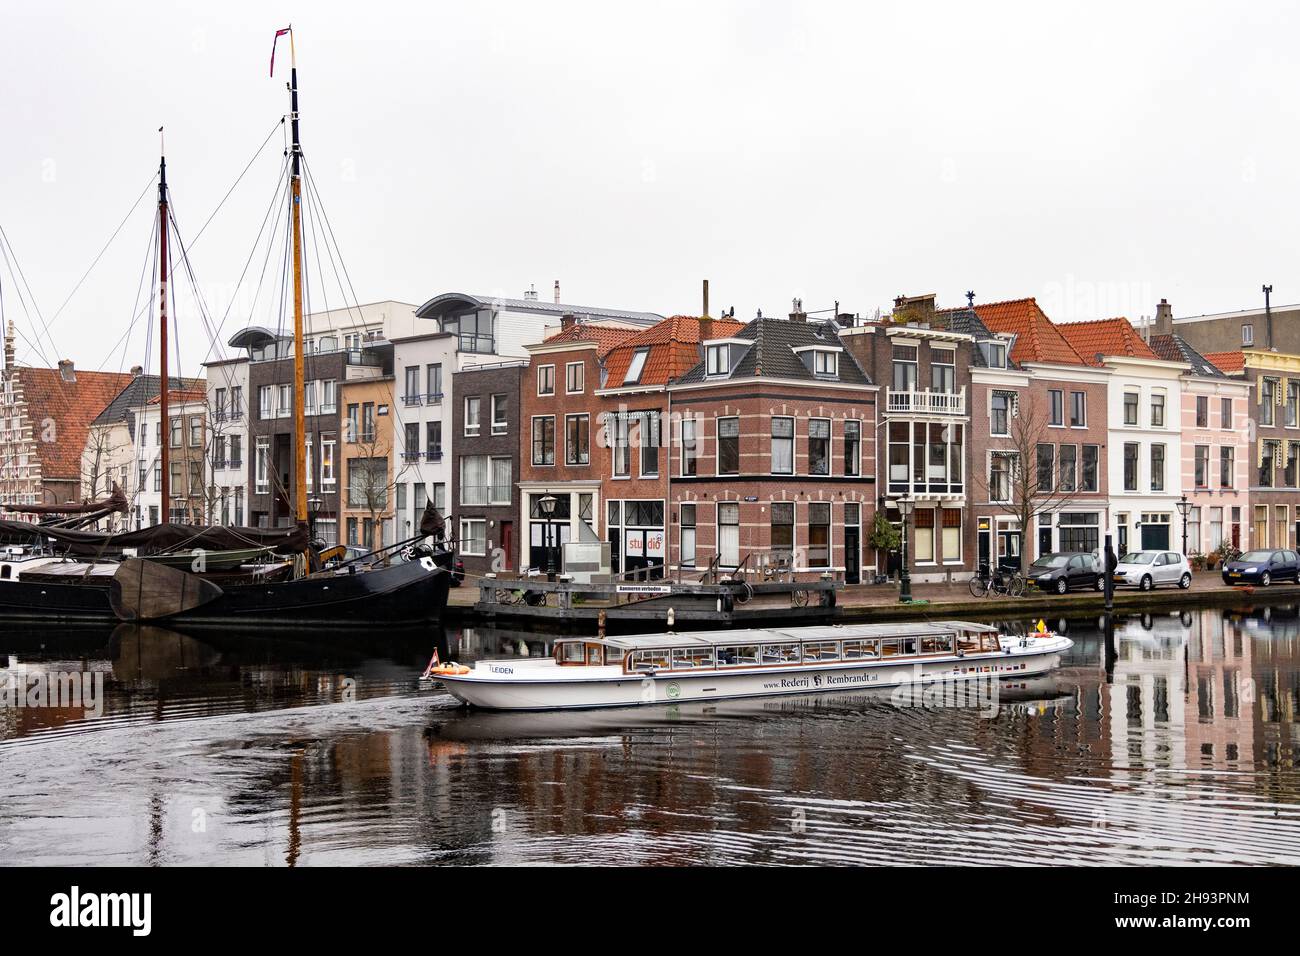 Una barca turistica passa accanto agli edifici storici sul Kort Galgewater sul fiume Reno a Leiden, Paesi Bassi. Foto Stock